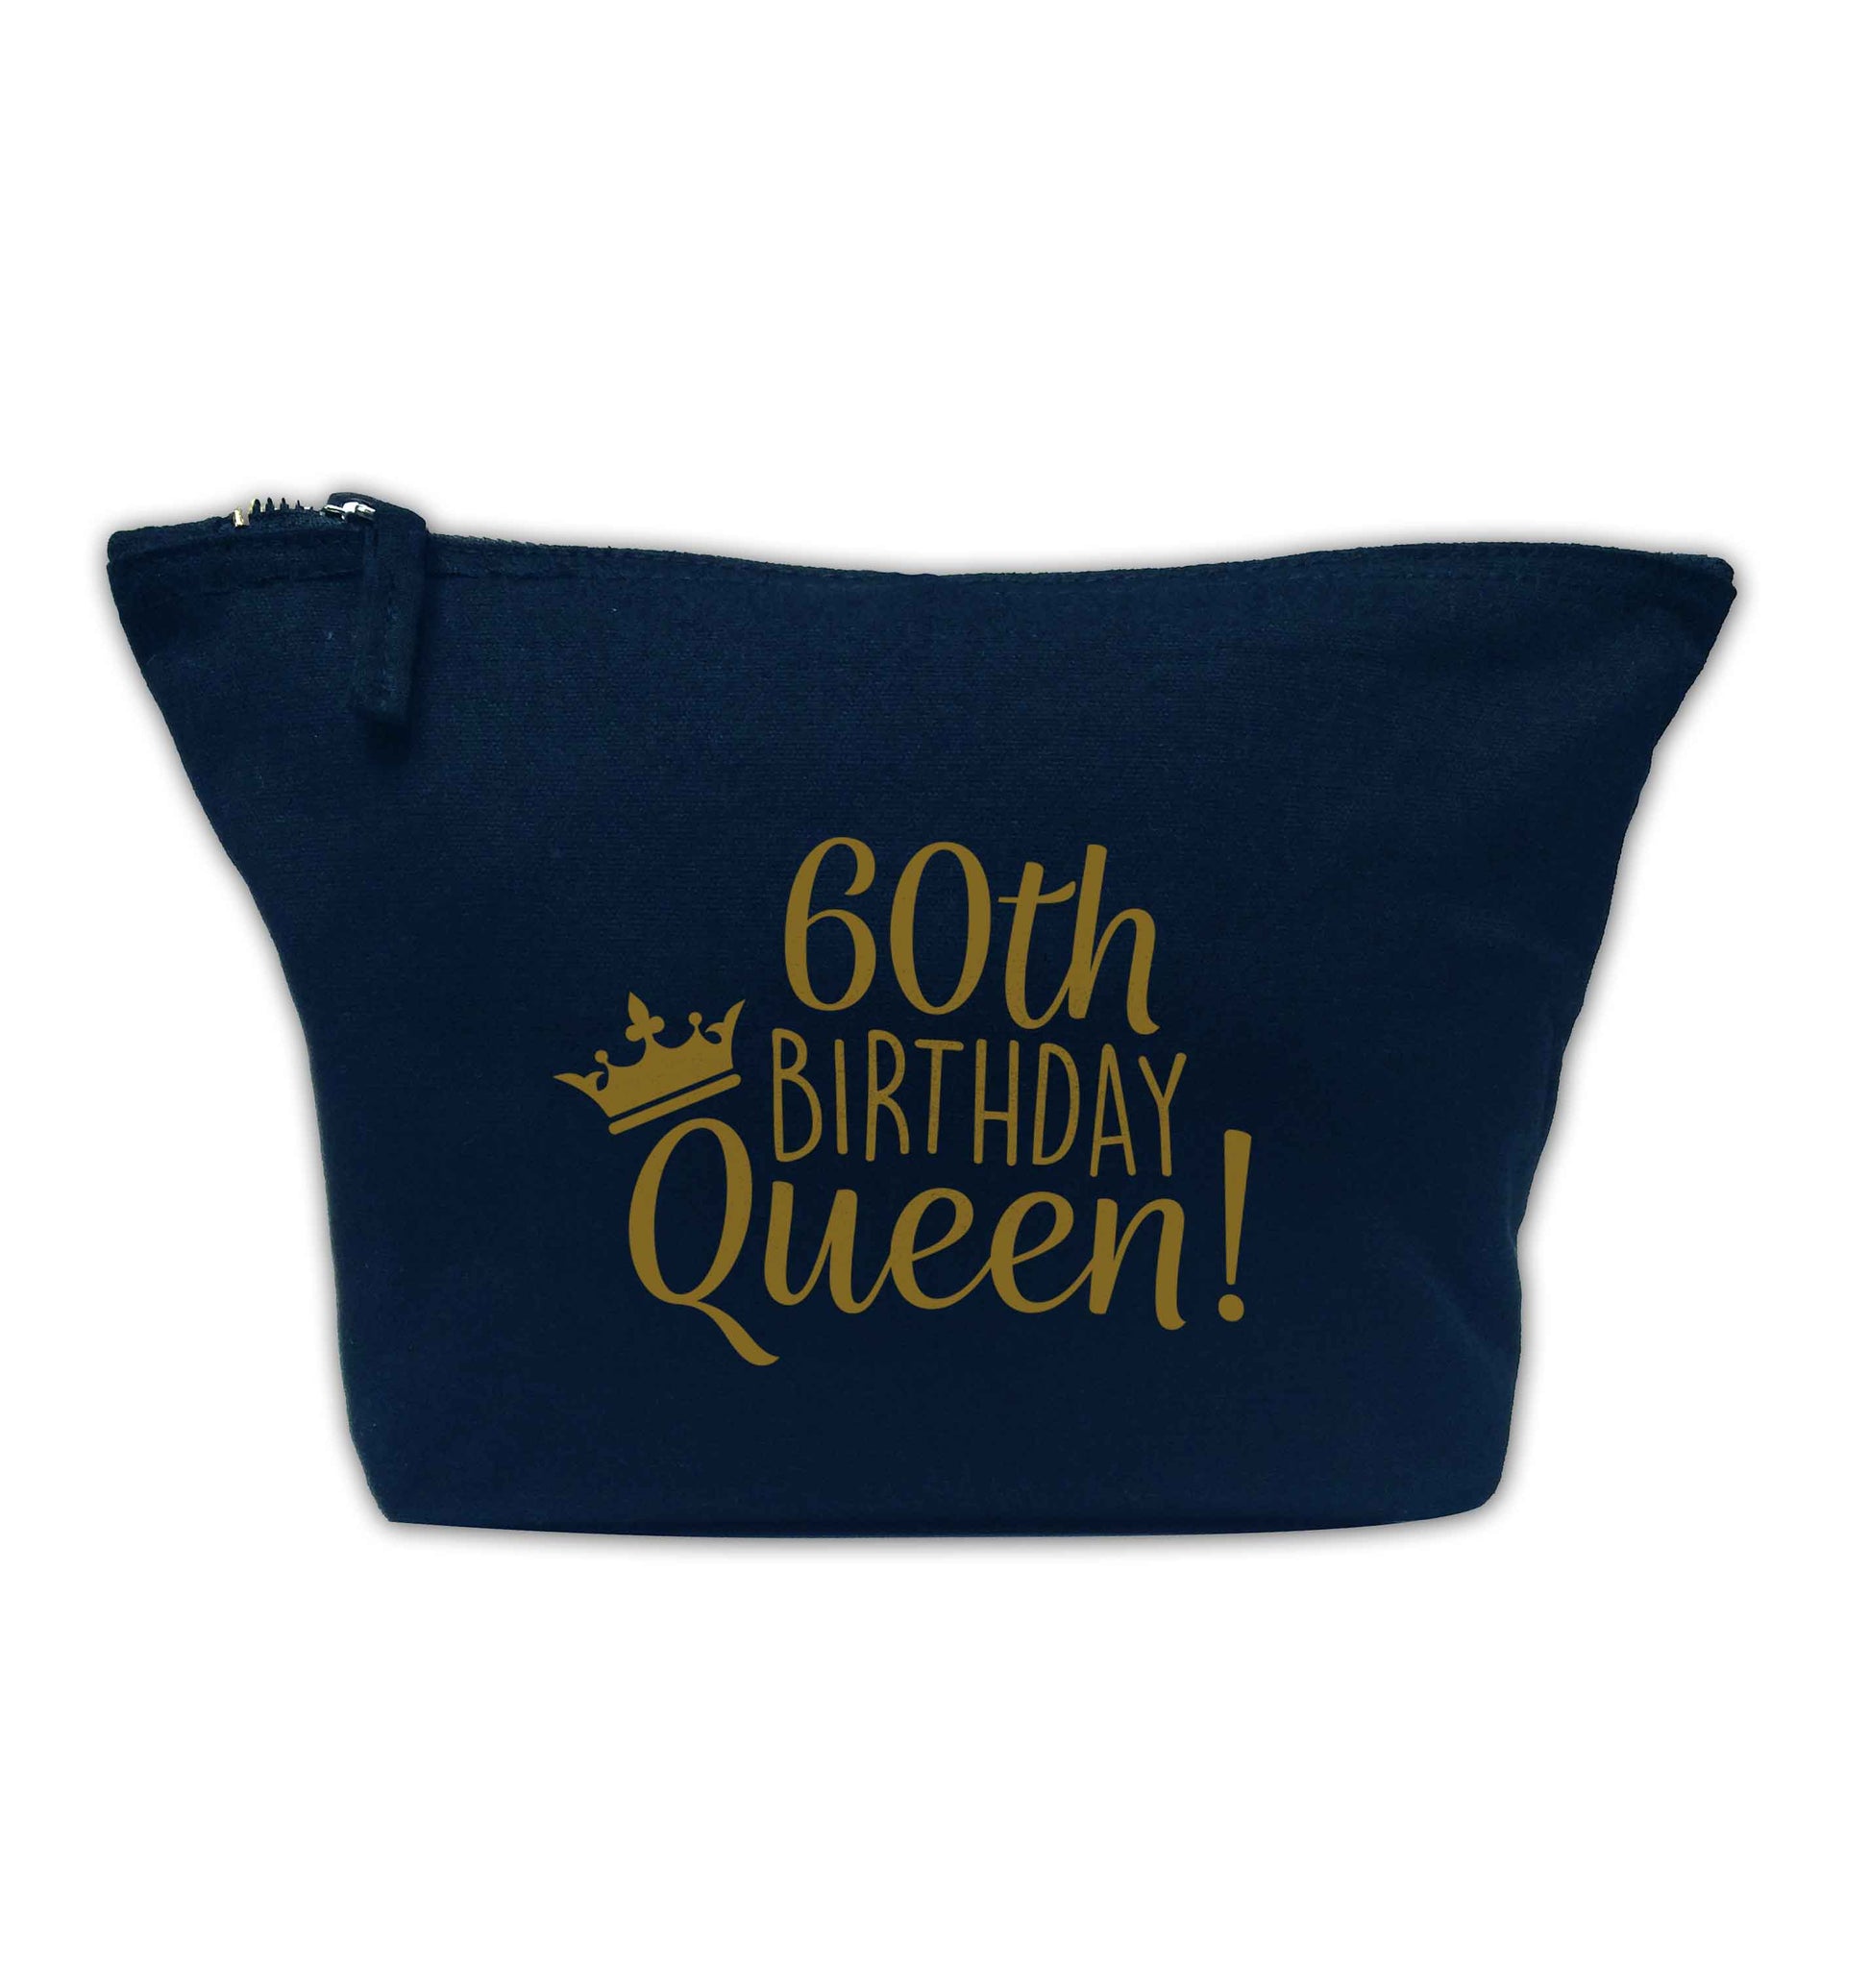 60th birthday Queen navy makeup bag